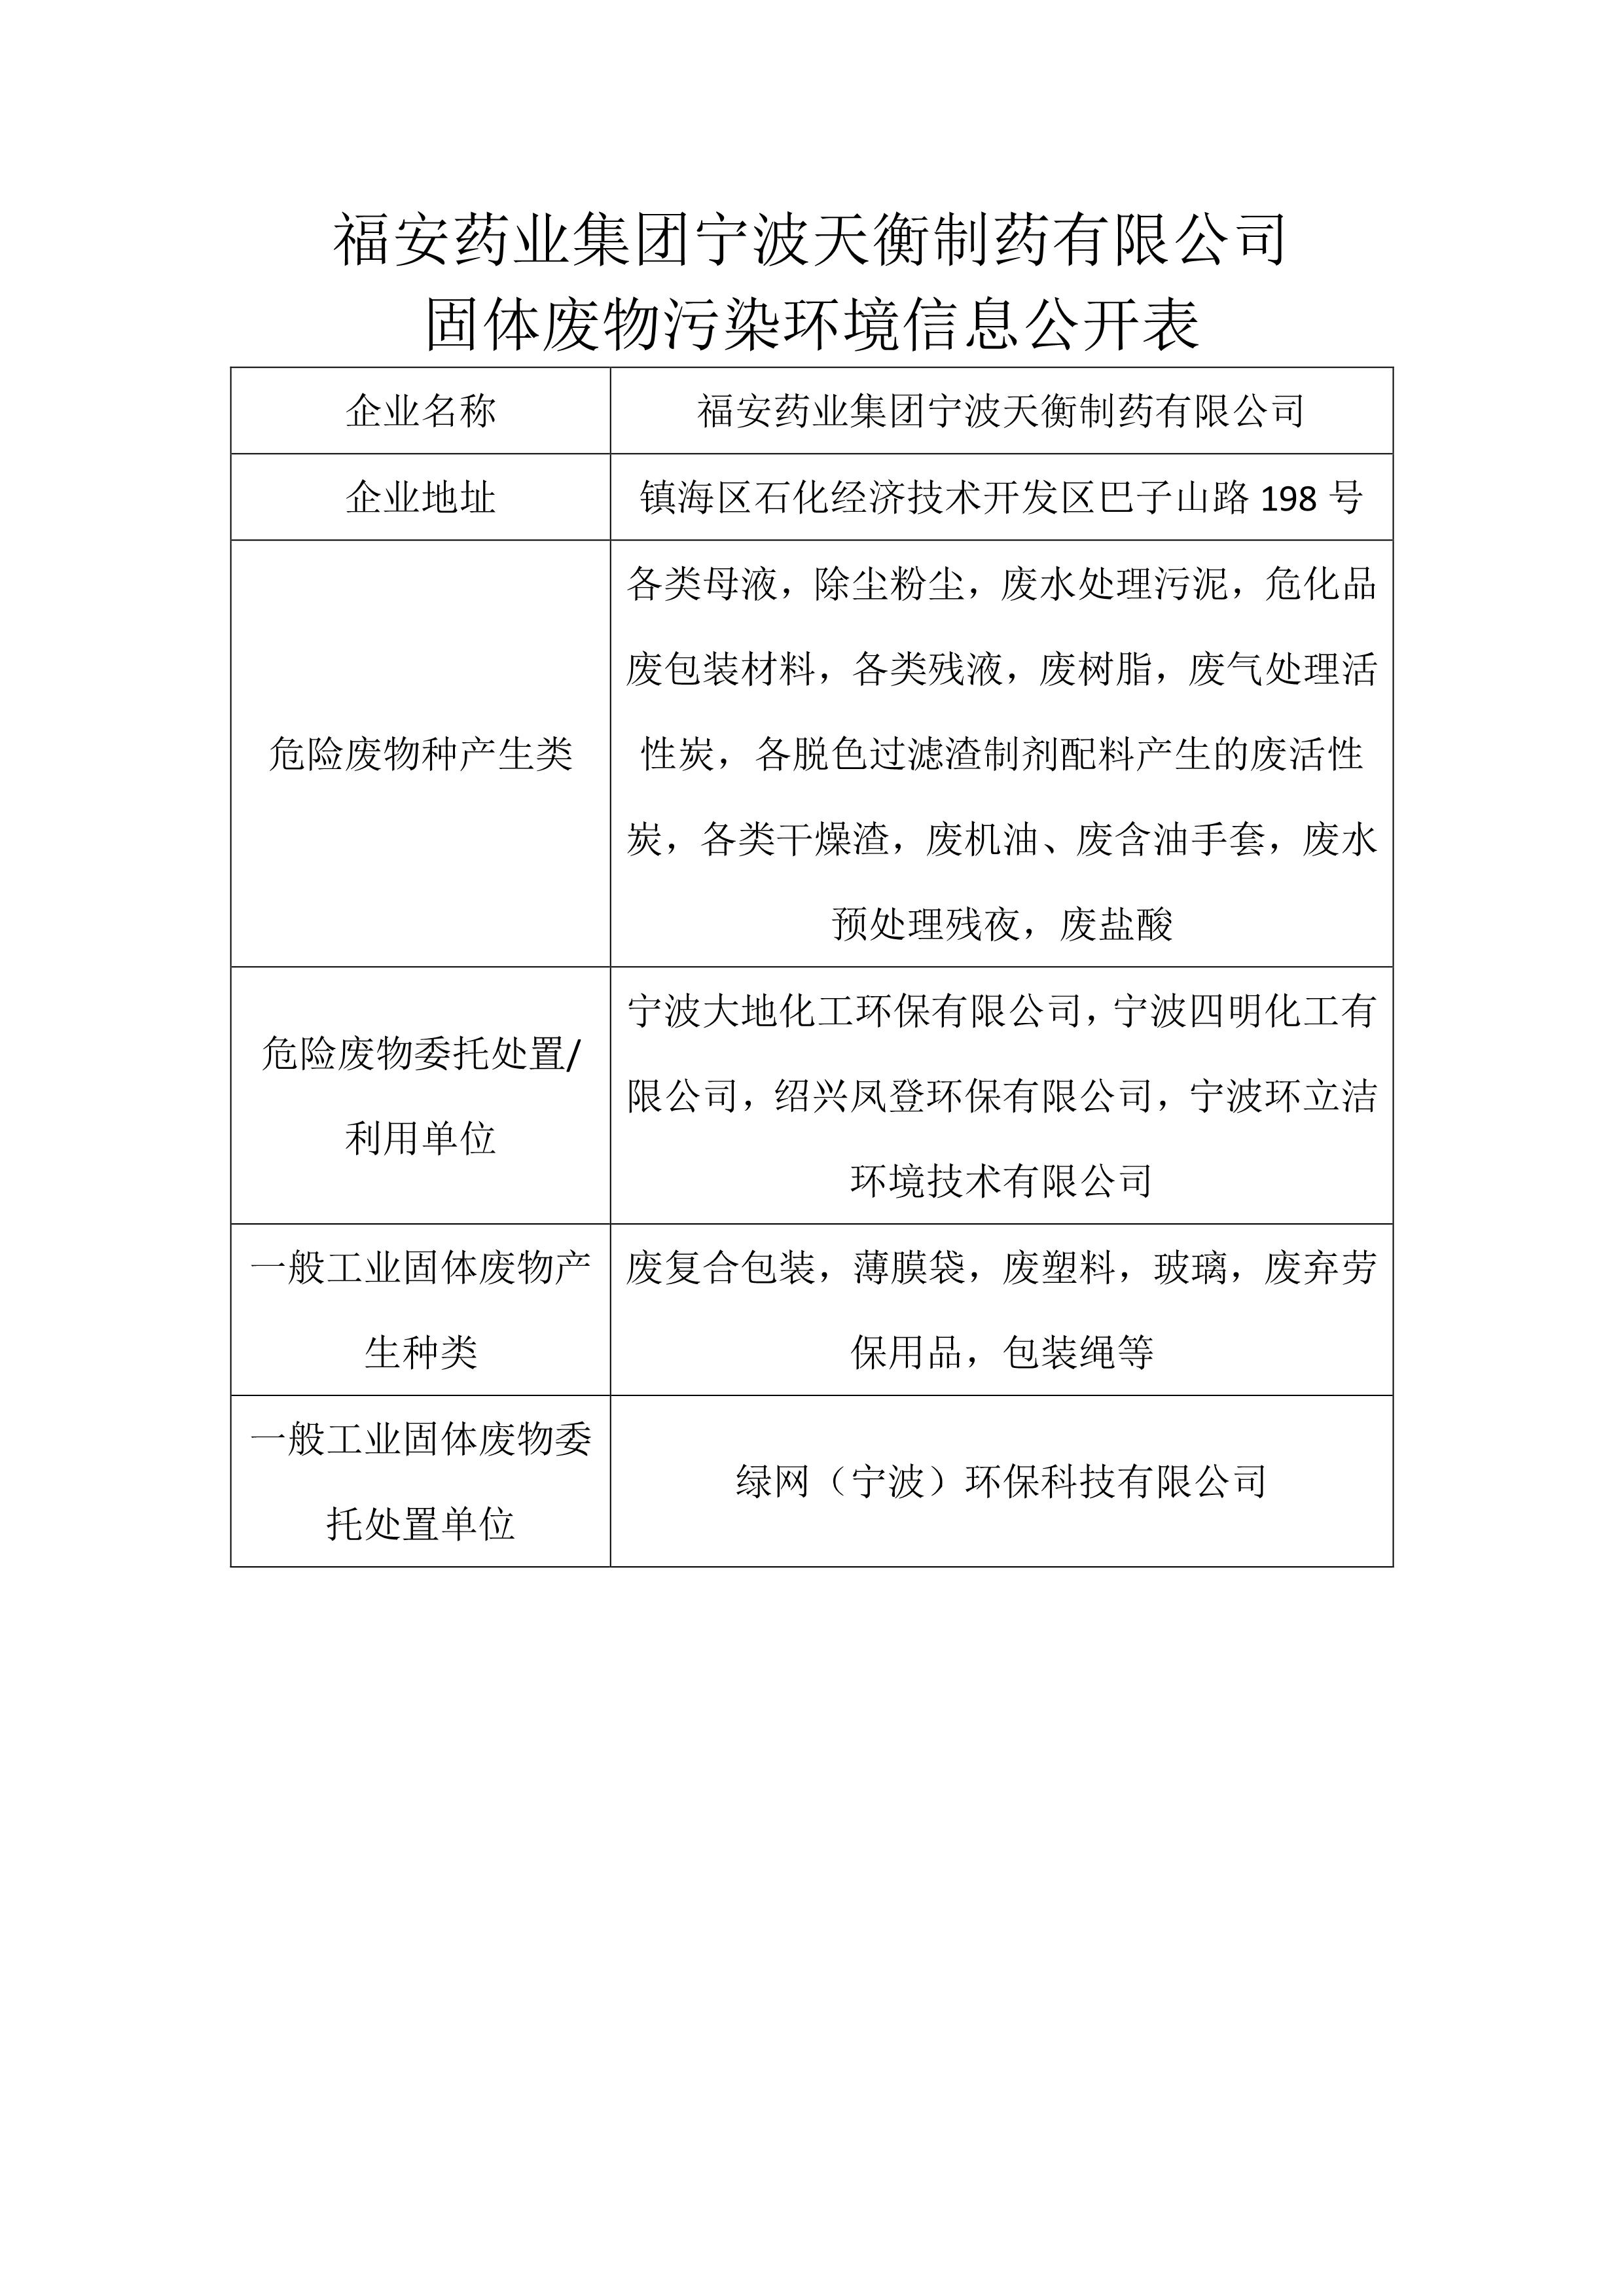 z6尊龙凯时官网药业集团宁波天衡制药有限公司  固体废物污染环境信息公开表